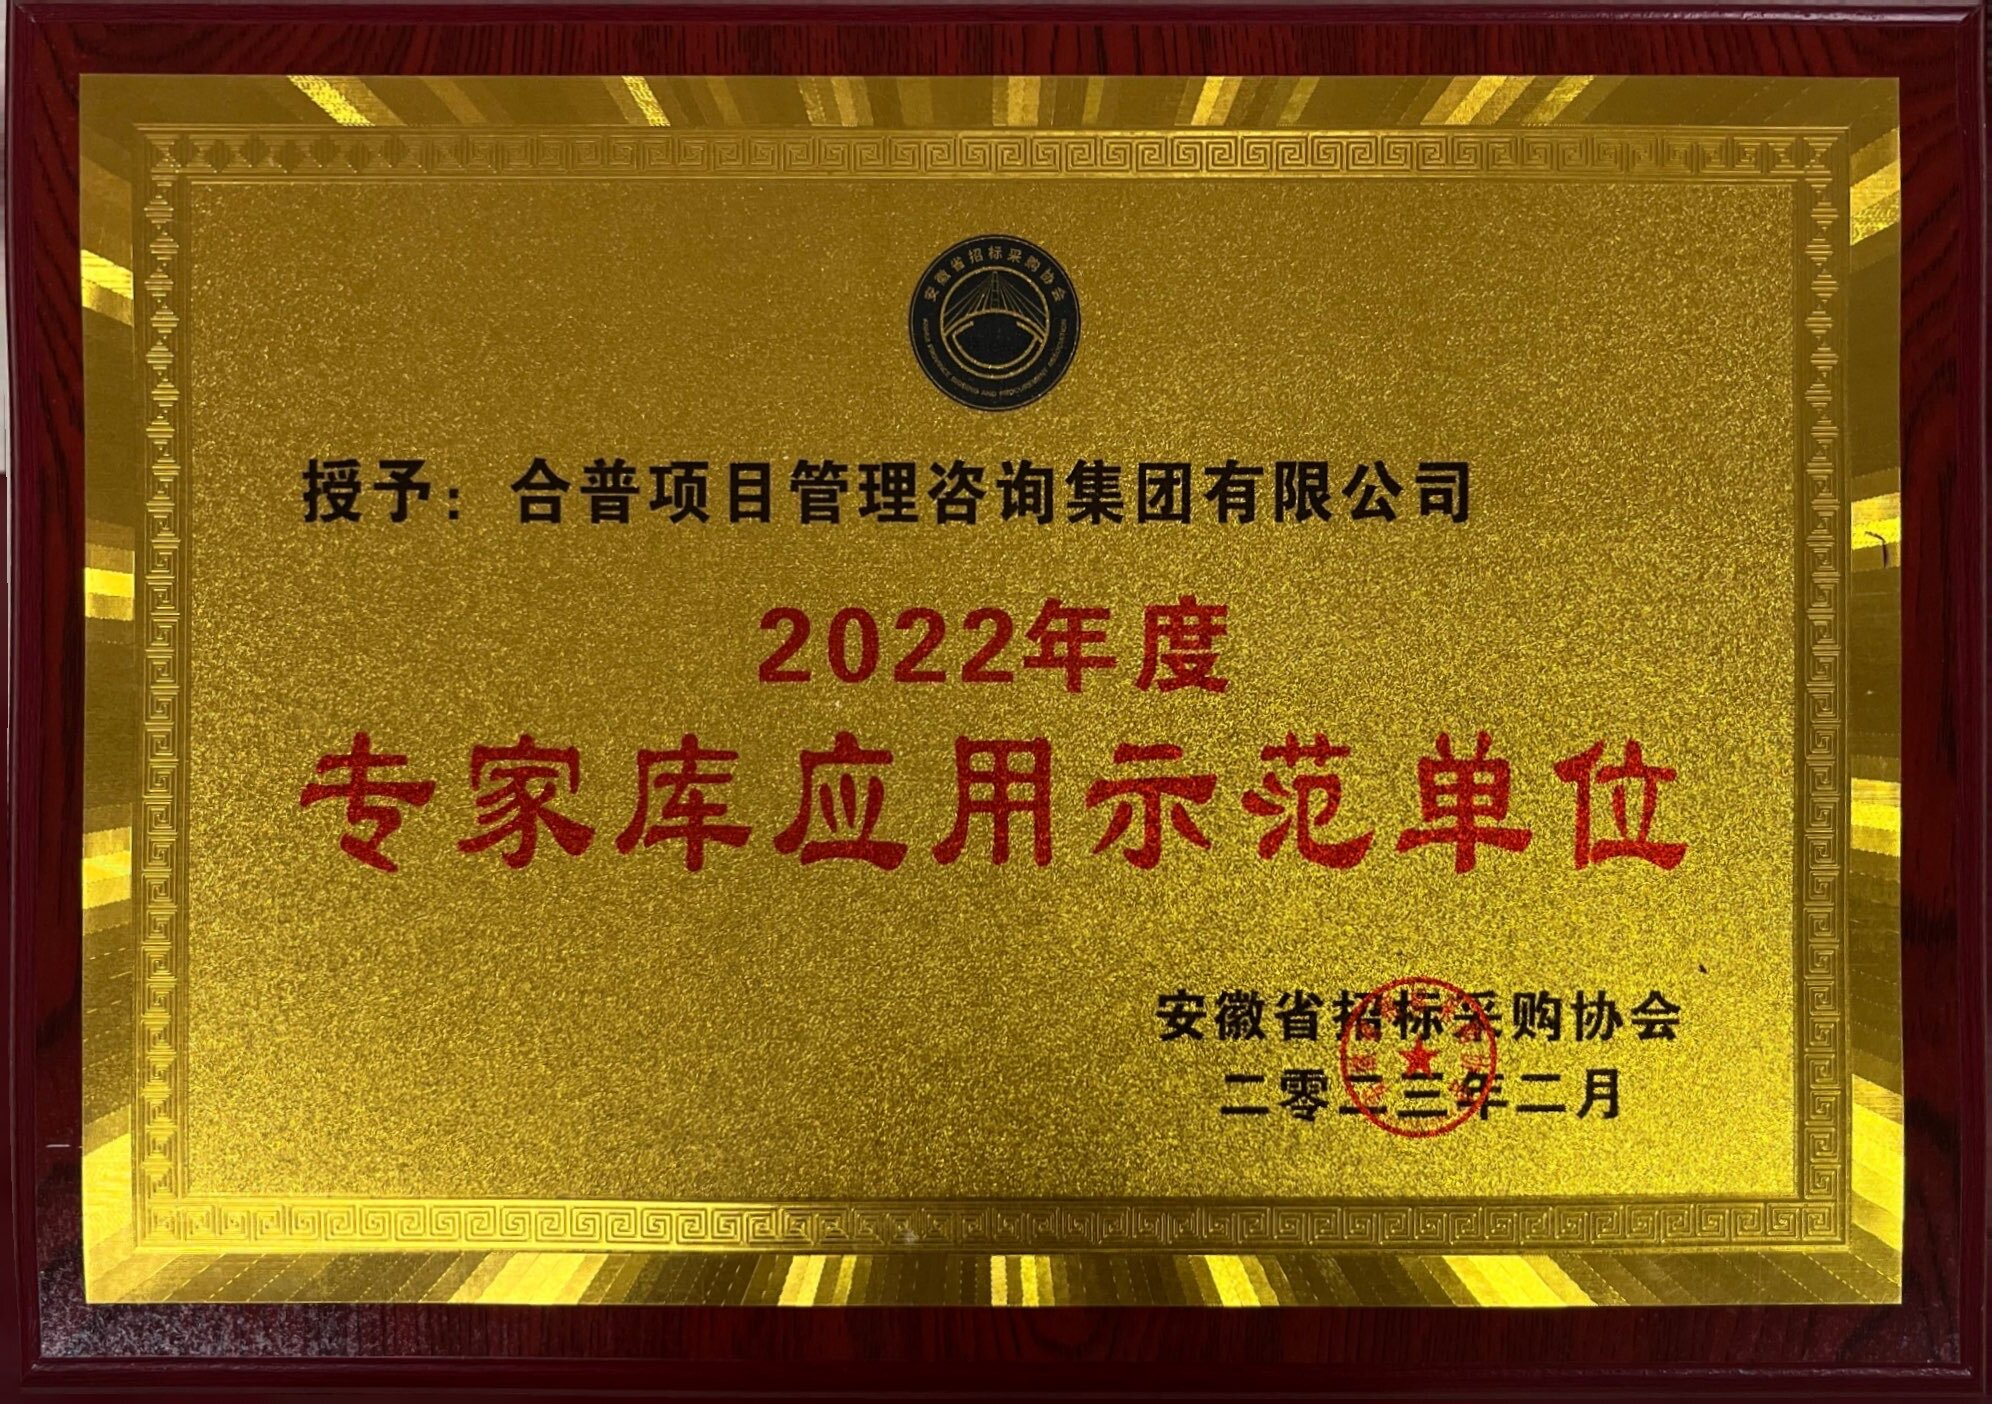 2022年度 “专家库应用示范单位”